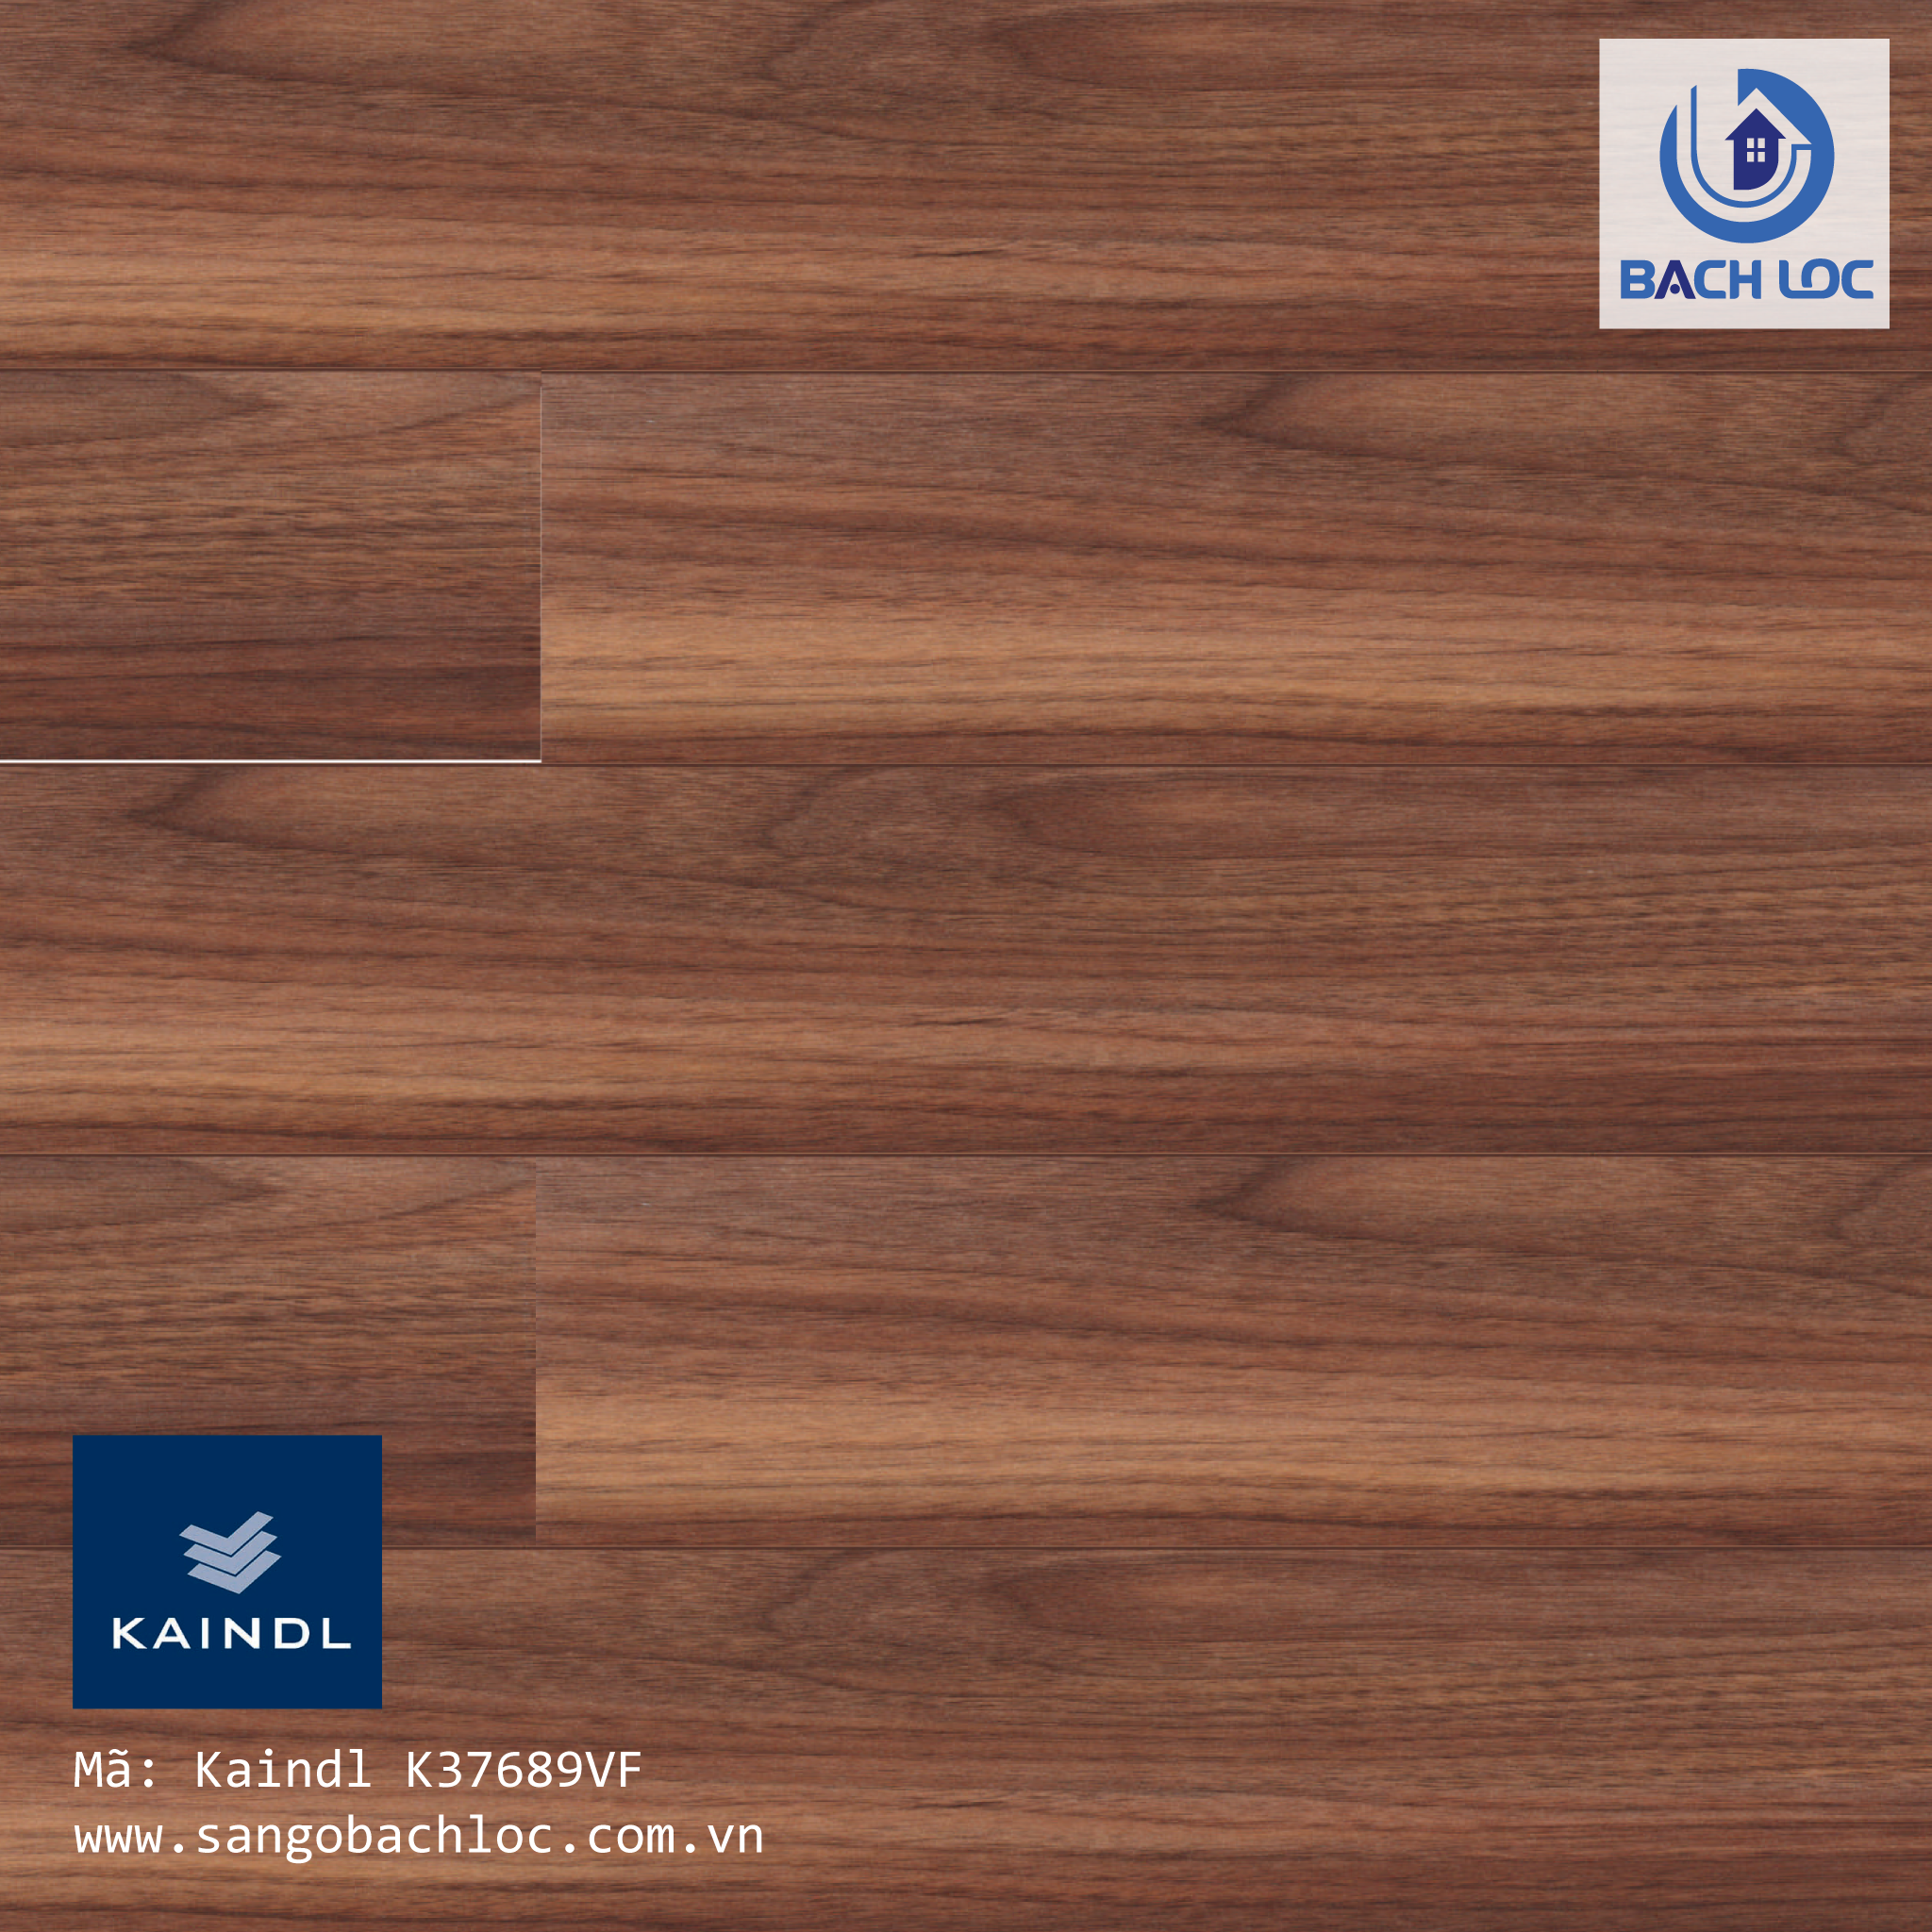 àn gỗ công nghiệp Kaindl 37689 SN nổi bật với tông màu trầm, vân gỗ đẹp tự nhiên